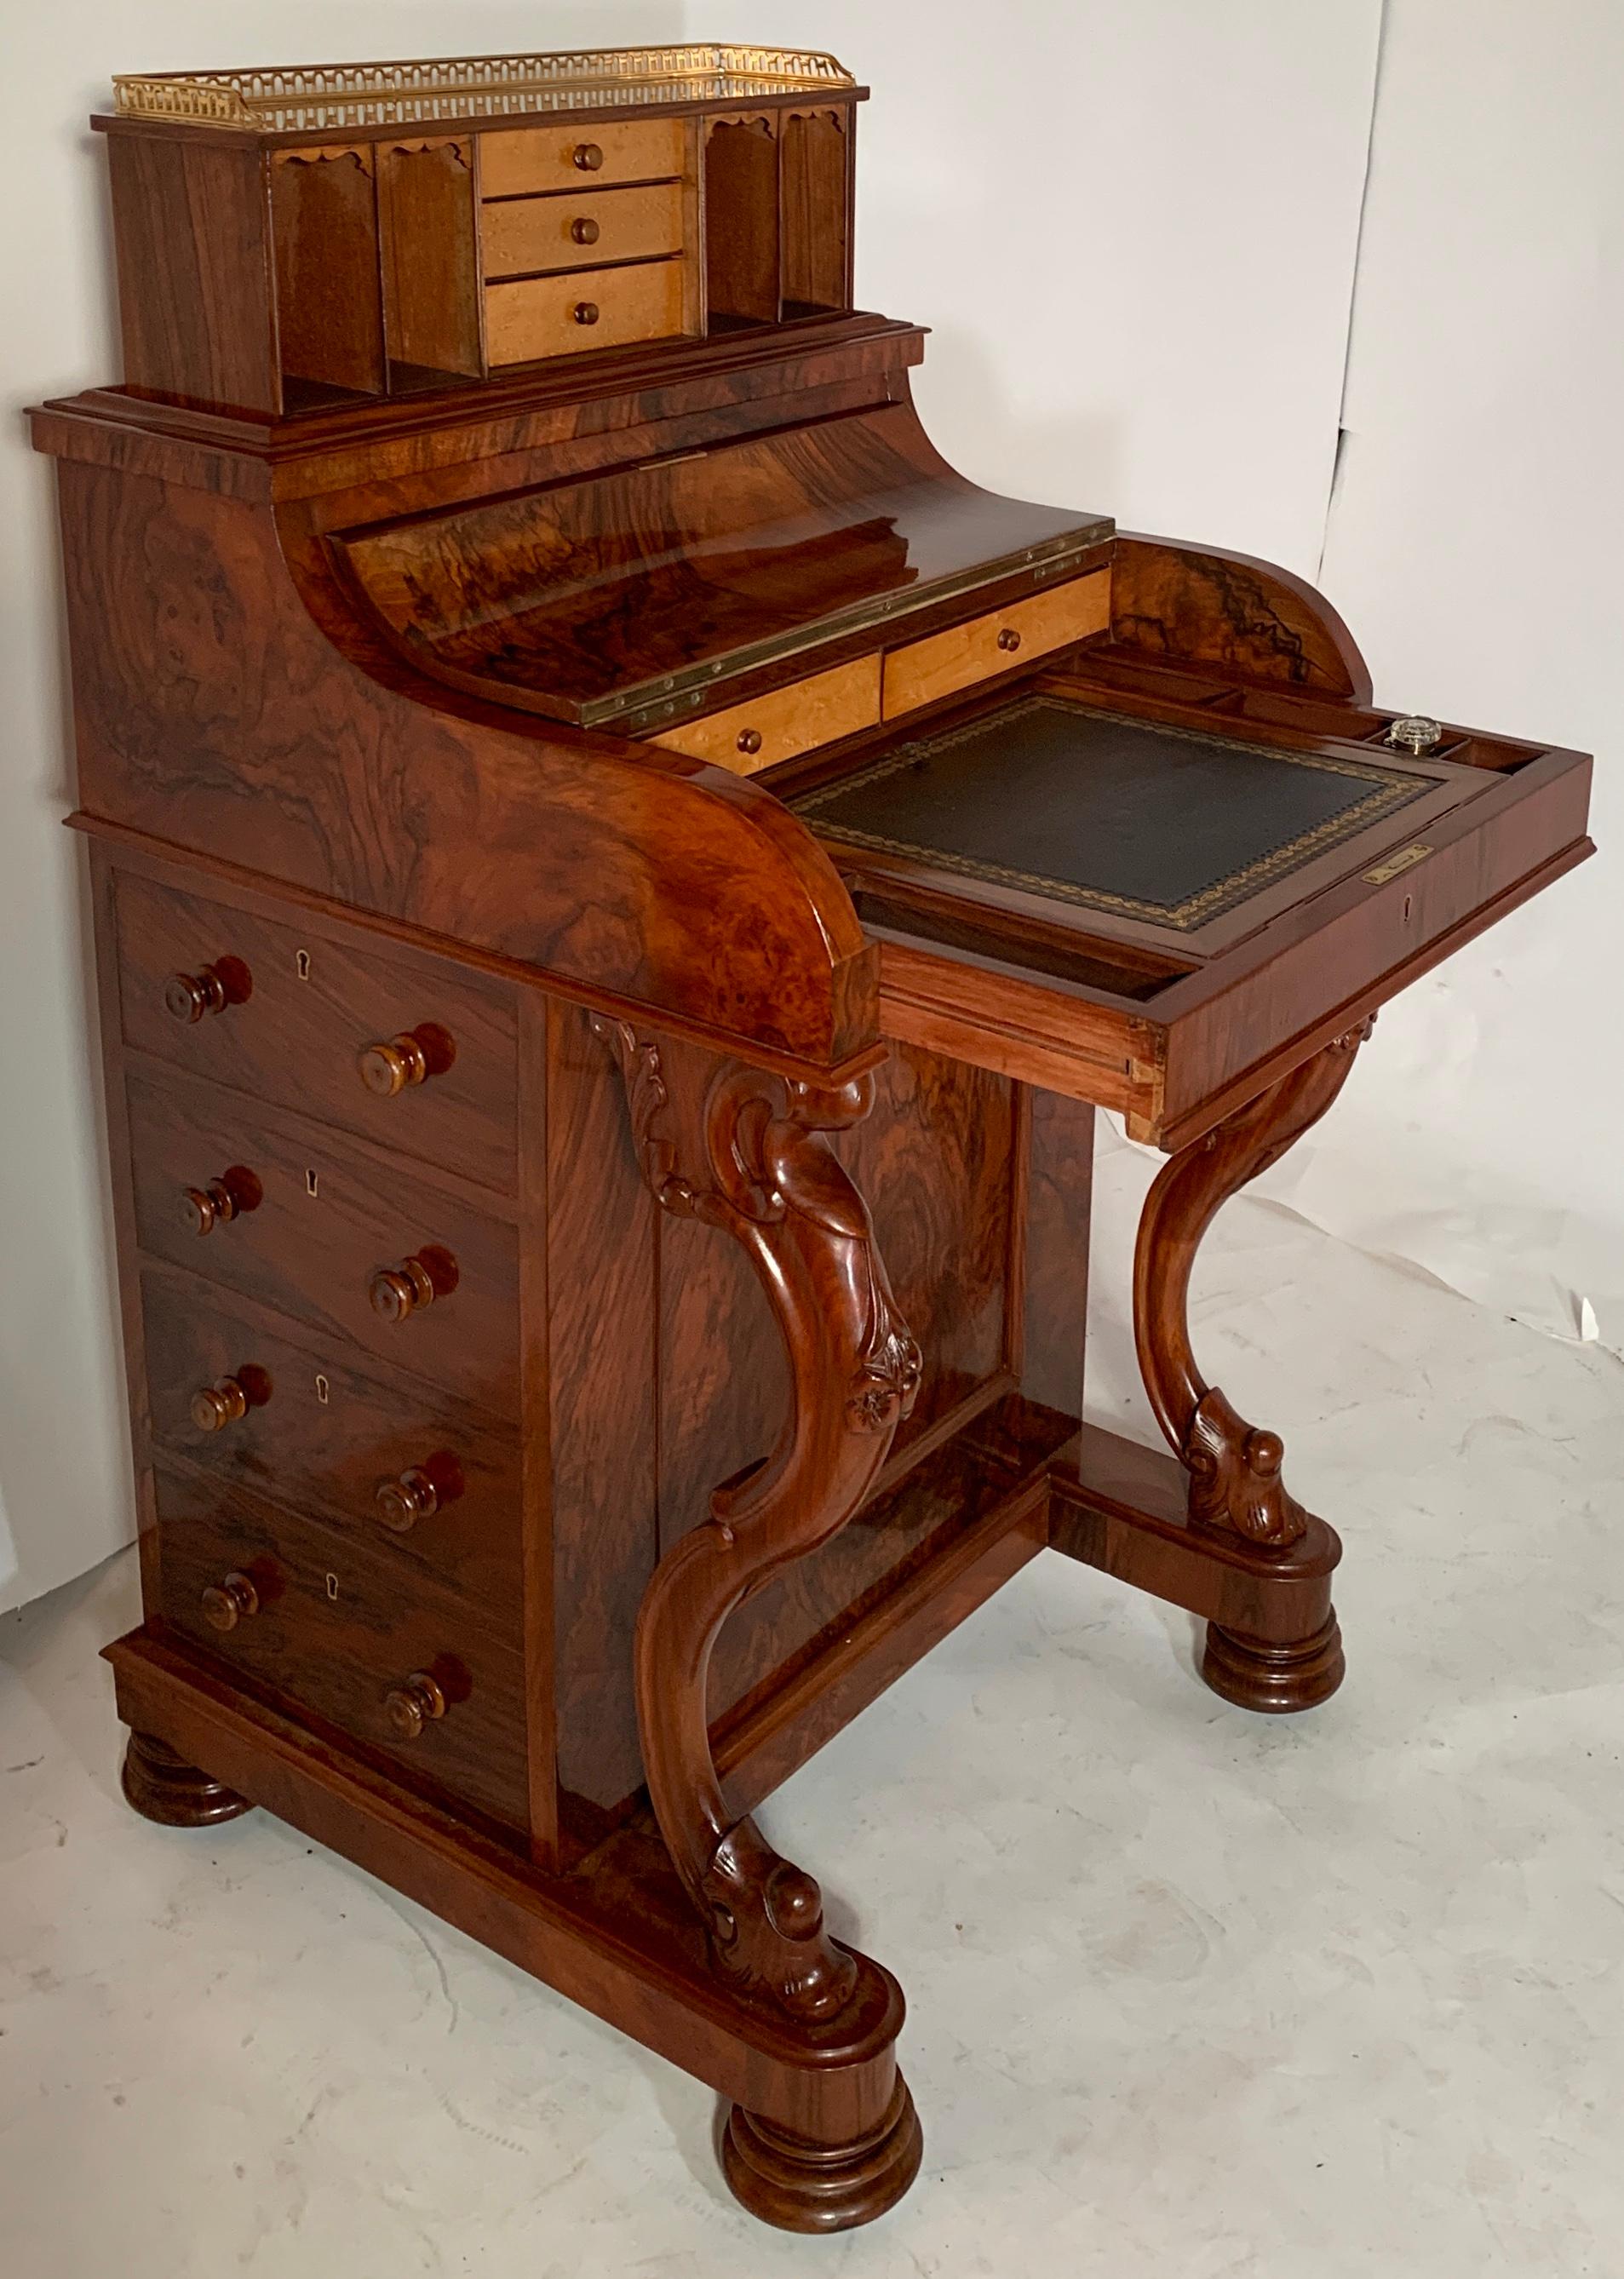 Antique English burled walnut mechanical davenport desk, circa 1870.
EWD050.